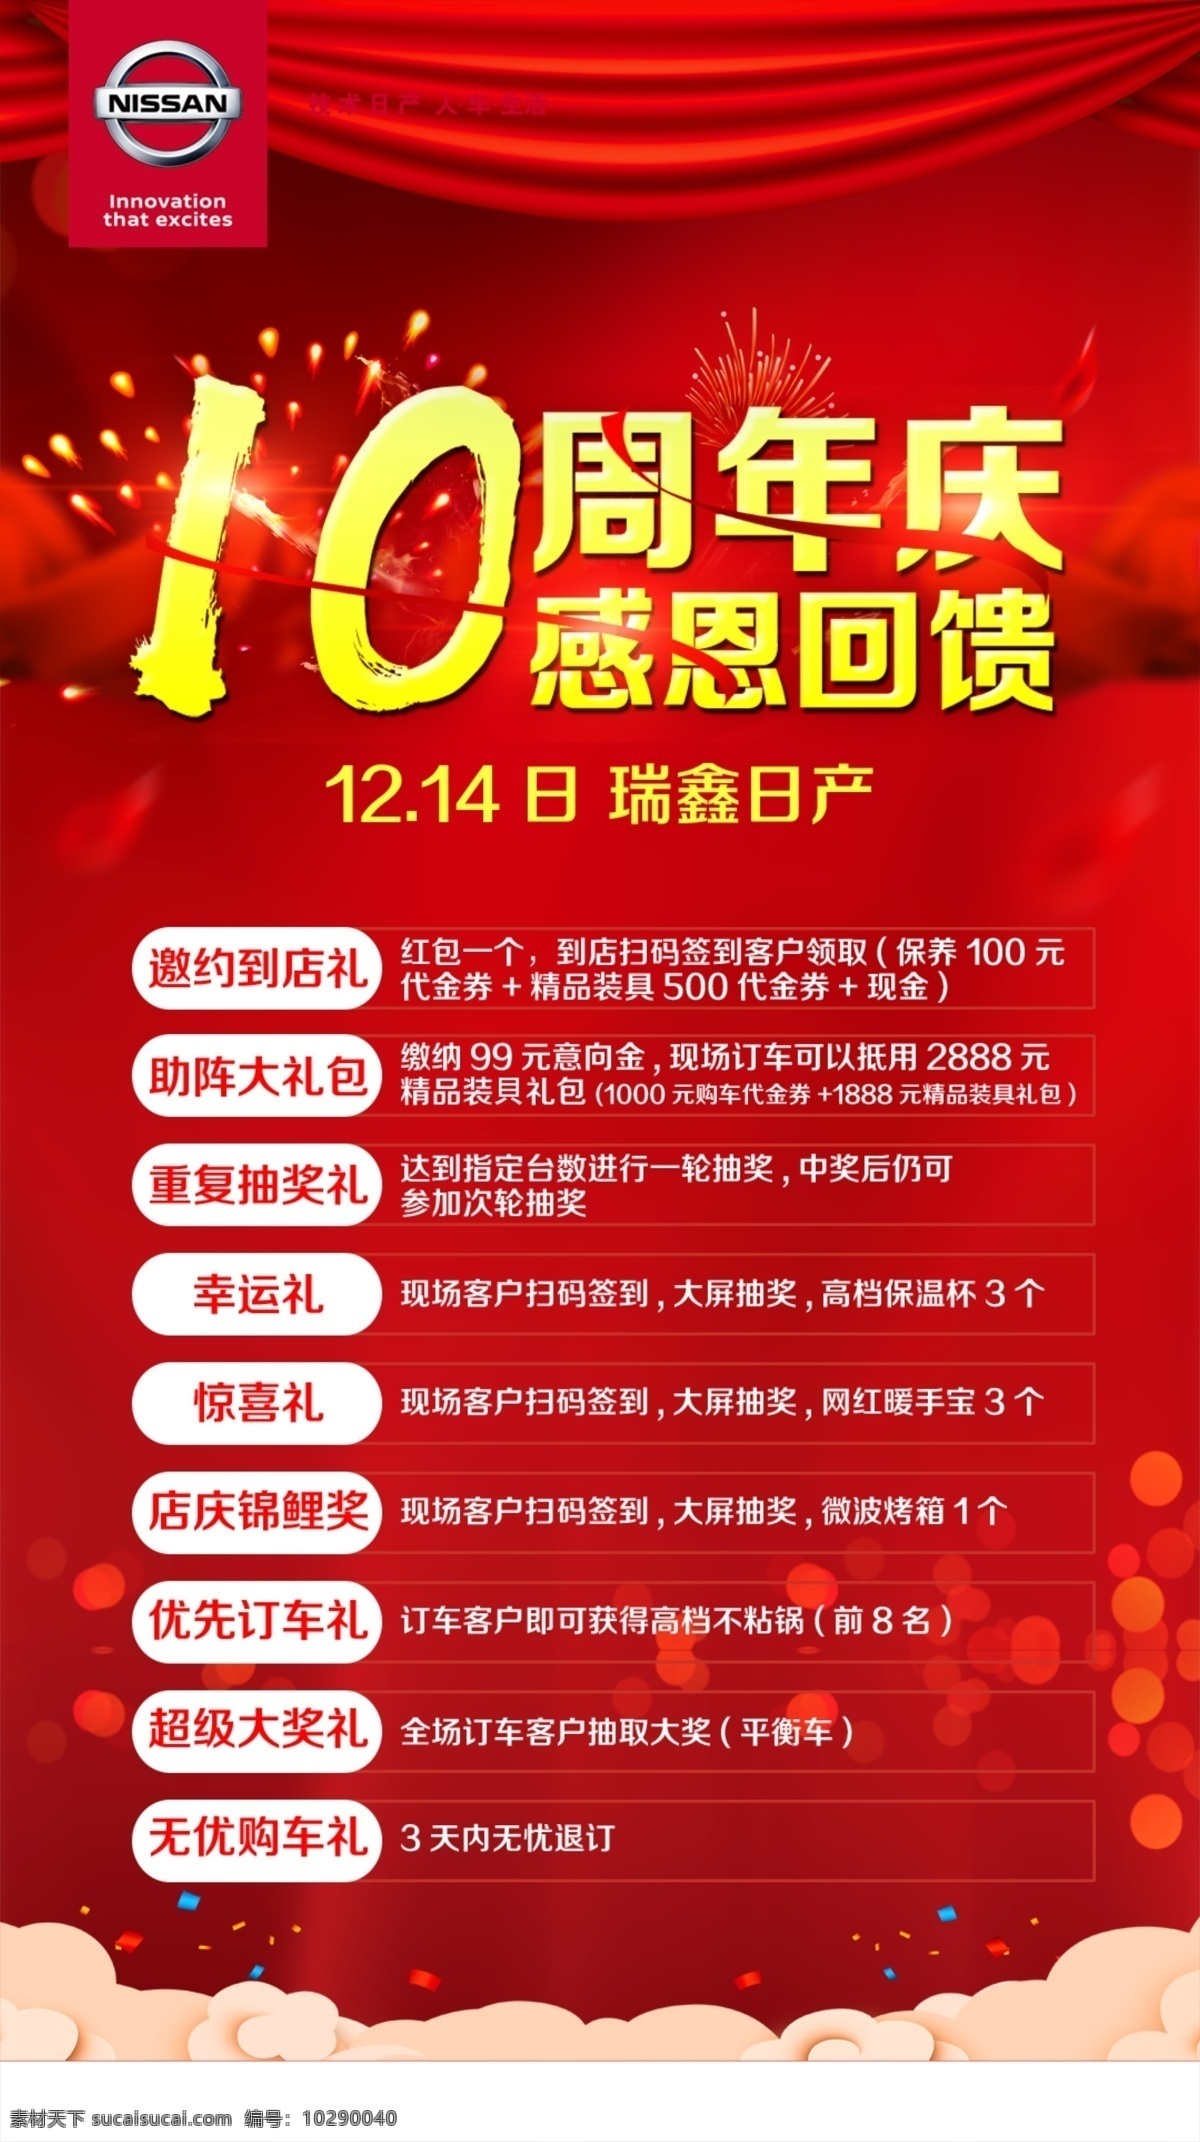 周年店庆海报 周年 店庆 海报 传播图 朋友圈 红色 汽车 写真 回馈